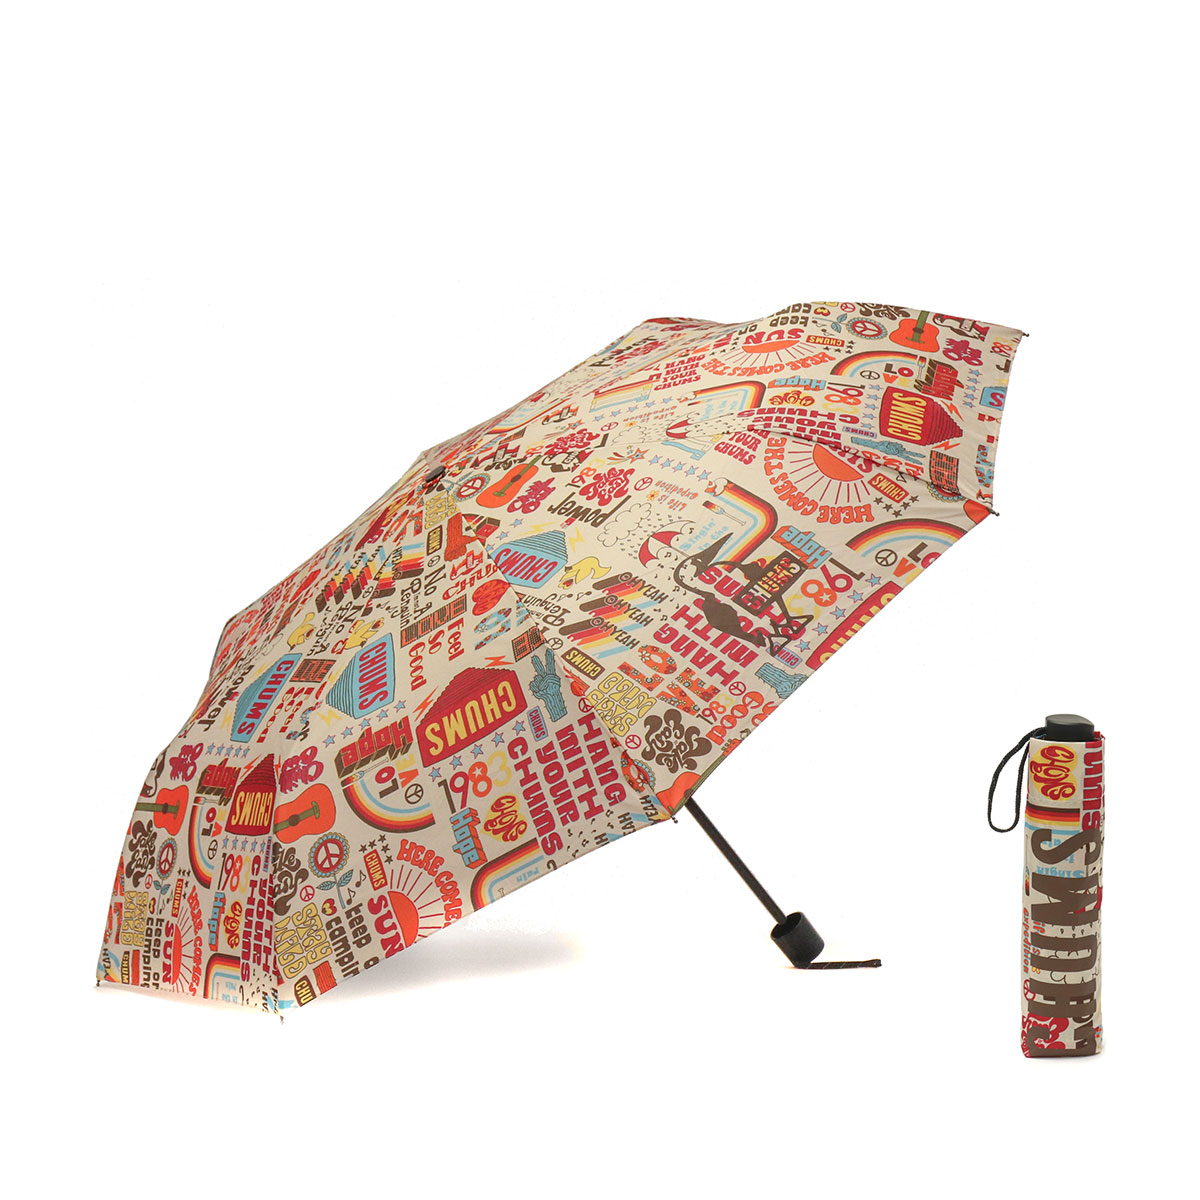 日本正規品】CHUMS チャムス Booby Foldable Umbrella 折りたたみ傘